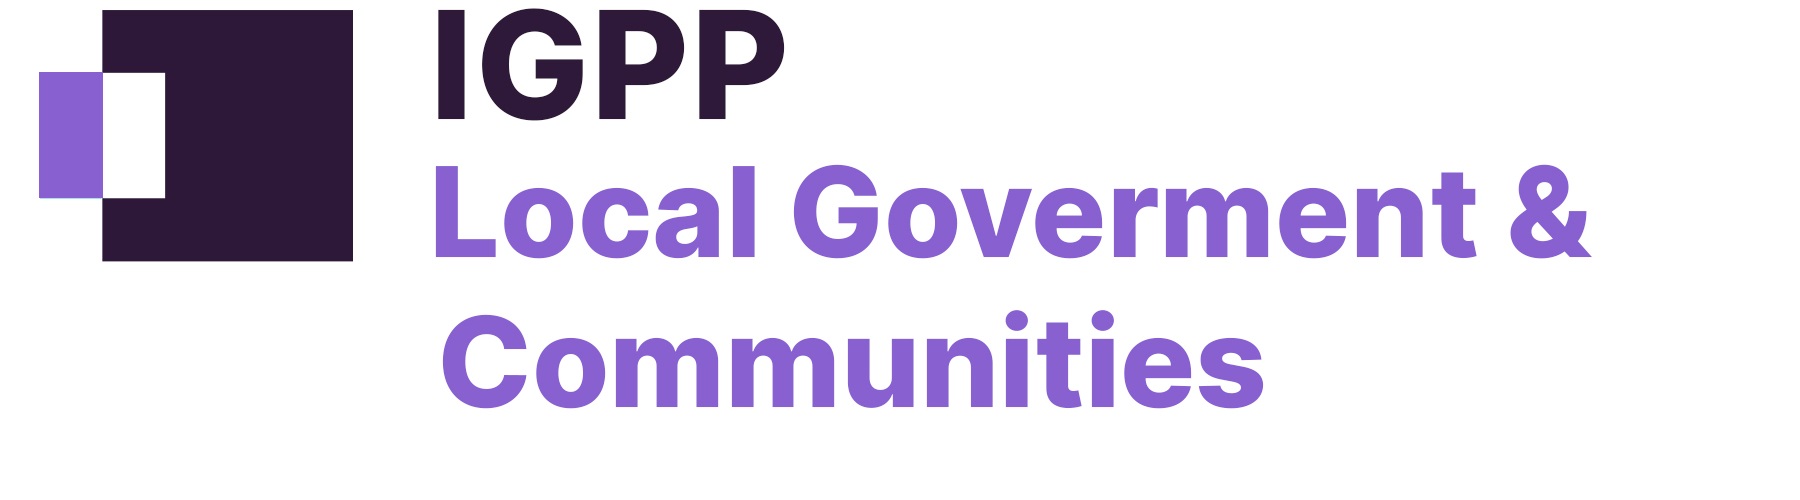 IGPP home affairs & justice sub brand logo